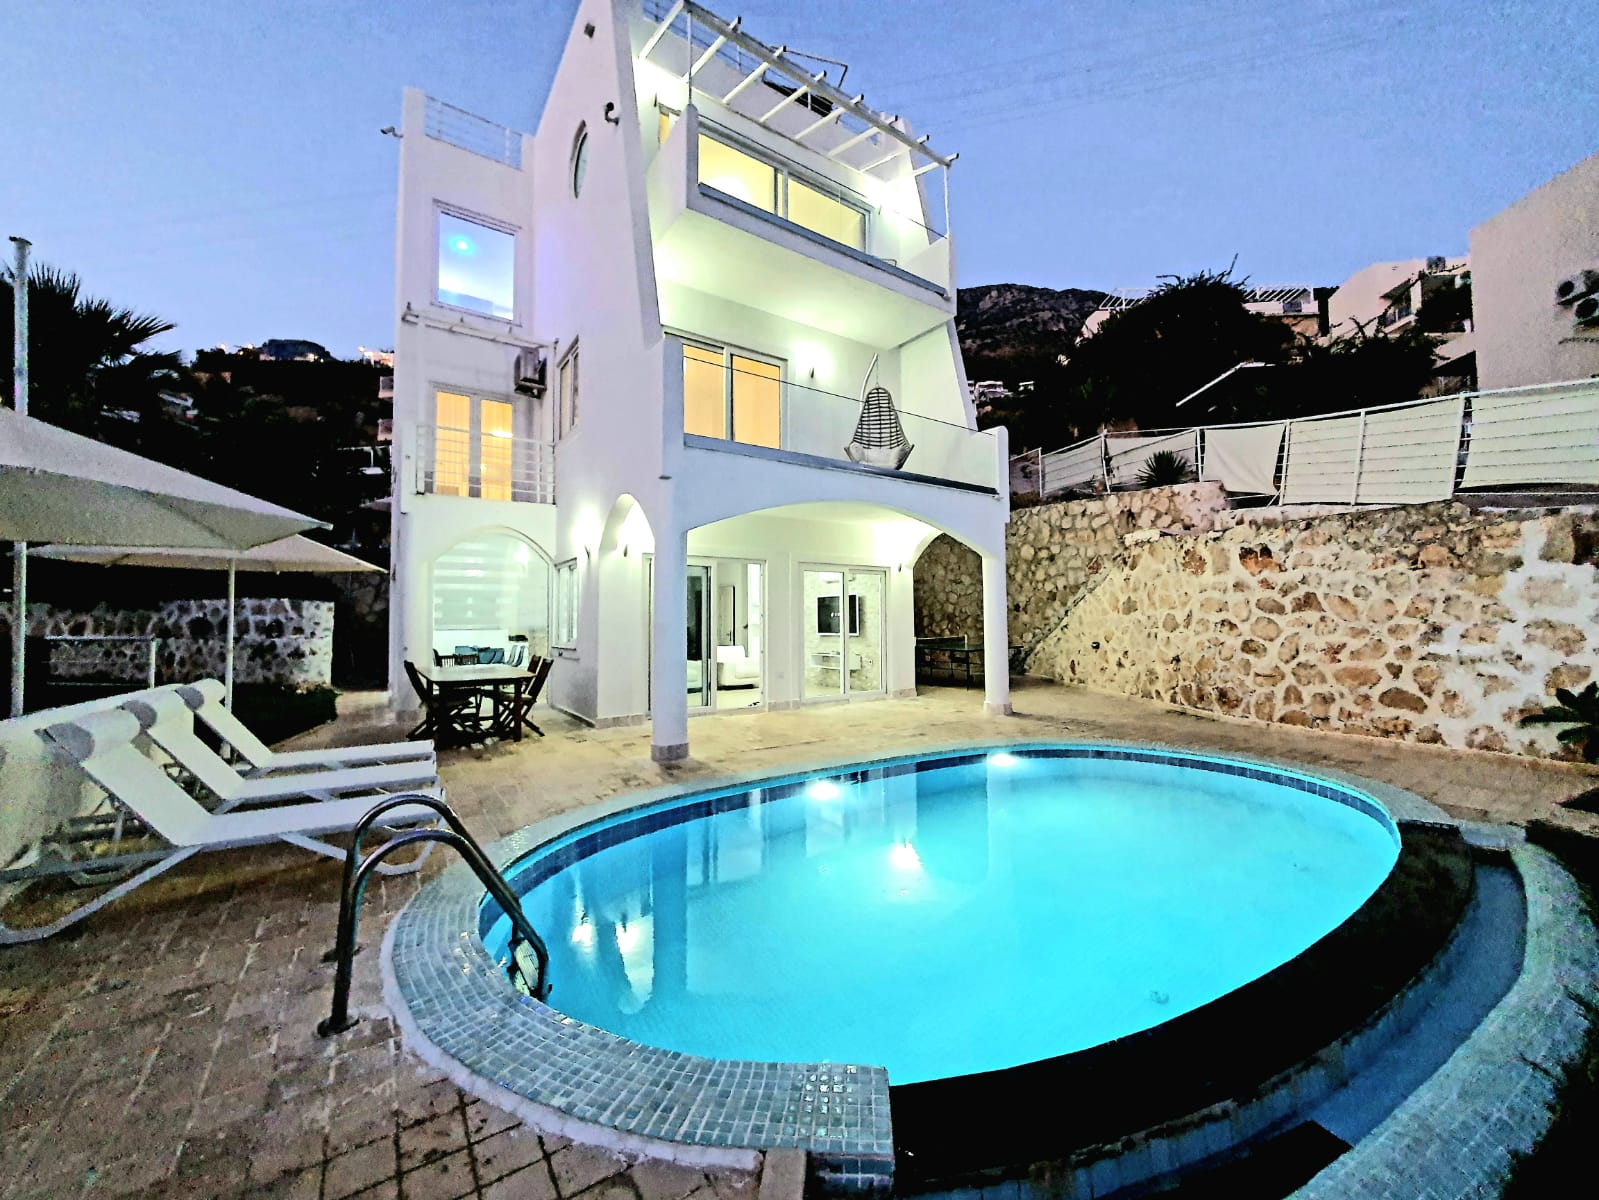 5 Bedrooms Luxury Villa for Rent in Kalkan